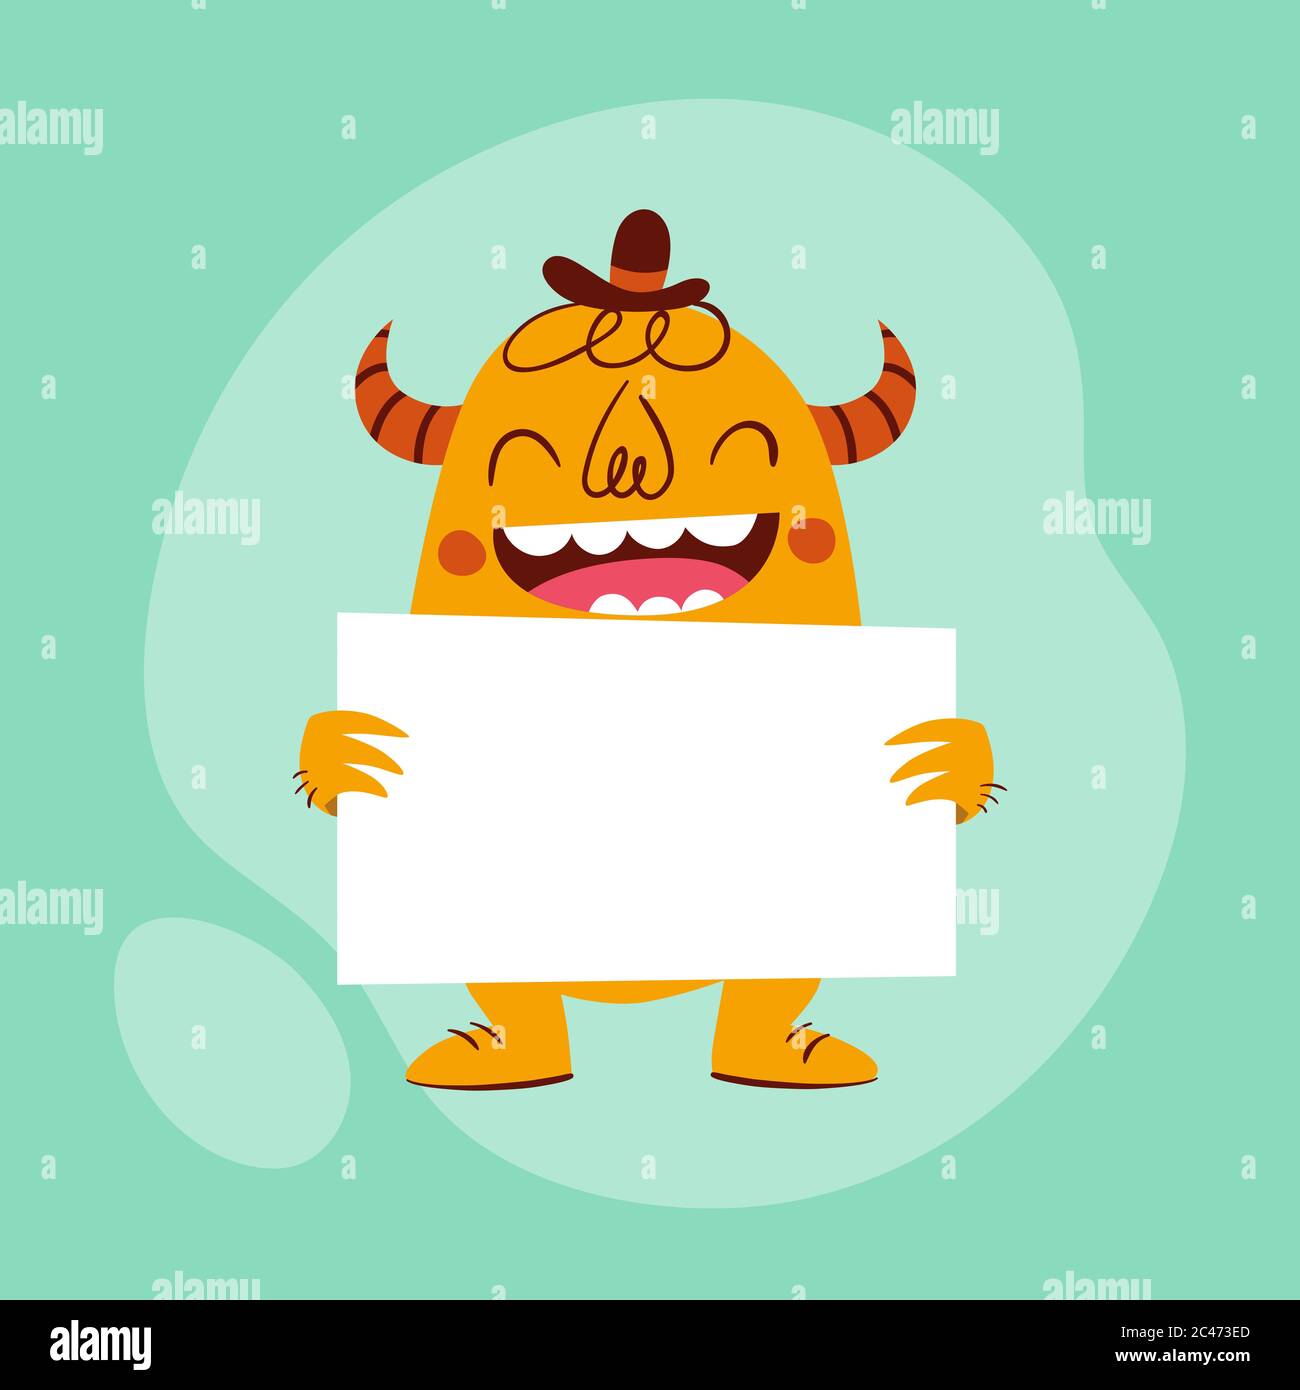 Mostro divertente che tiene una carta vuota. Personaggio in stile retrò cartoon di colore arancione, dietro una carta, con un ampio sorriso. Illustrazione vettoriale, perfetta per Illustrazione Vettoriale